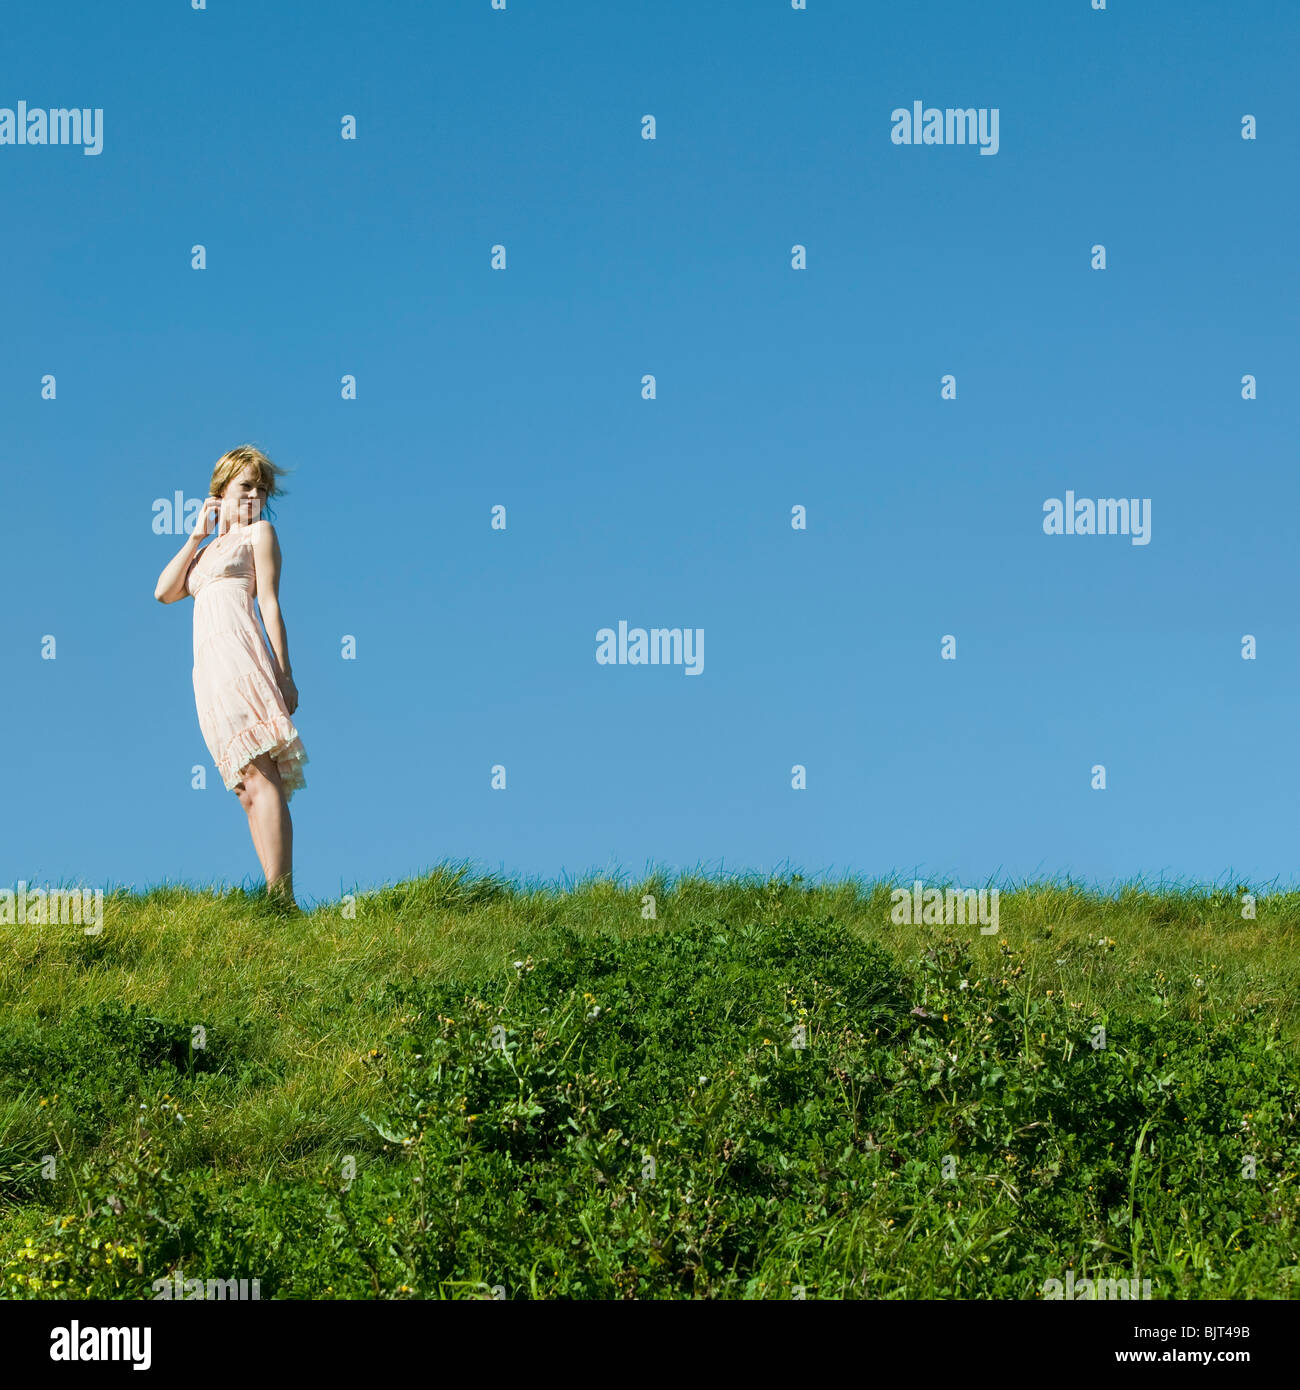 Stati Uniti, California, San Francisco, giovane donna in piedi sull'erba Foto Stock